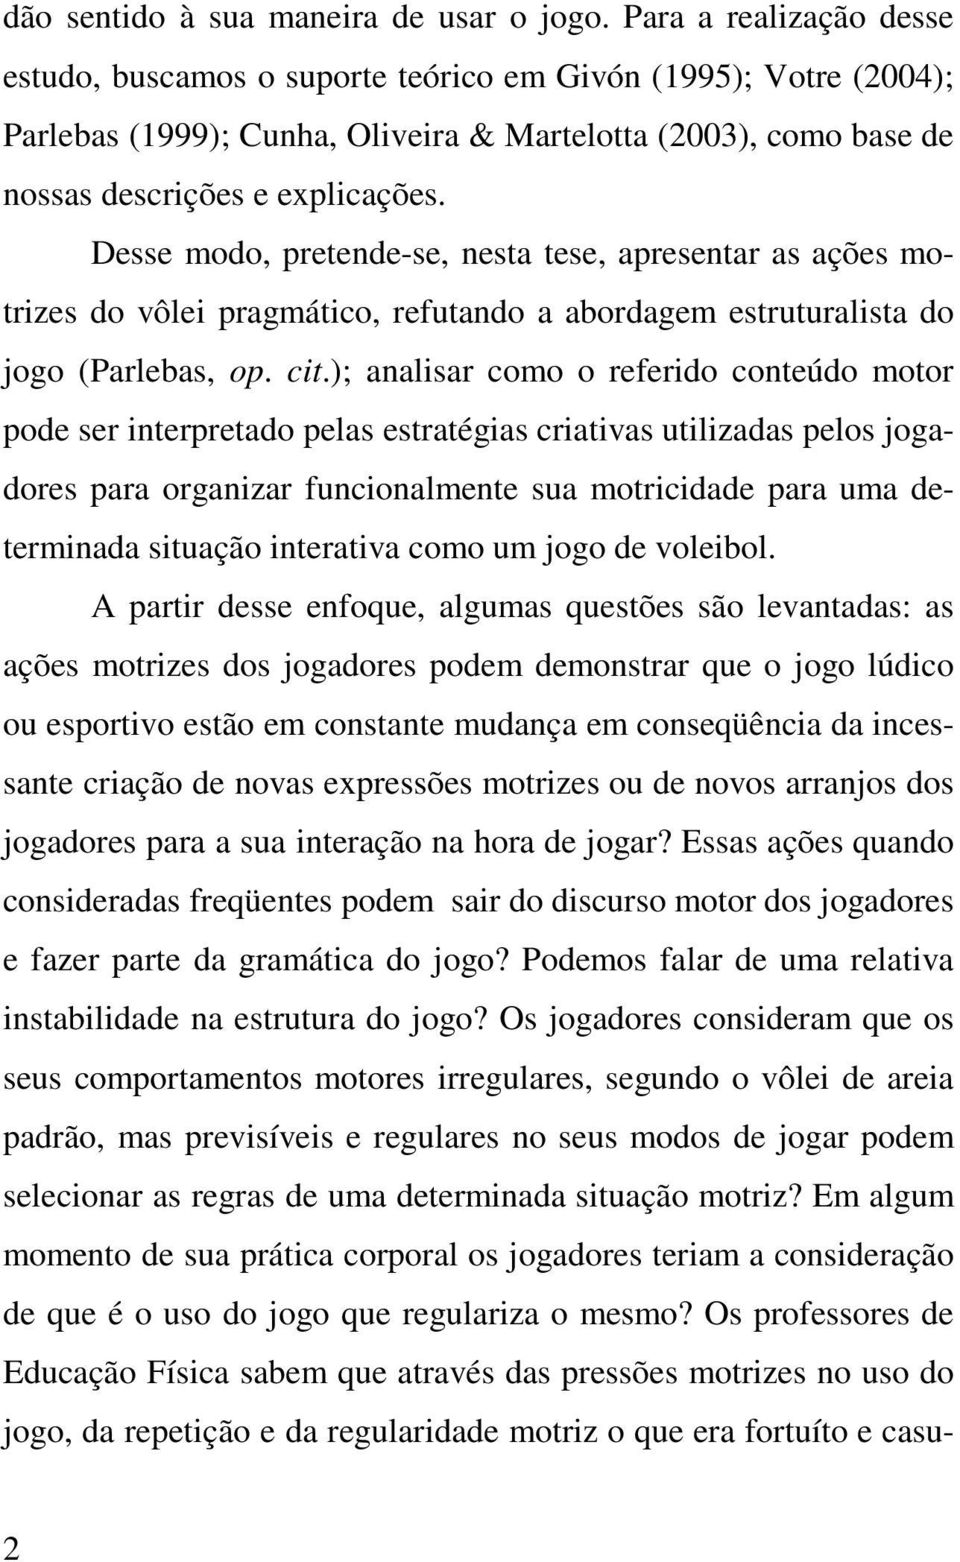 Desse modo, pretende-se, nesta tese, apresentar as ações motrizes do vôlei pragmático, refutando a abordagem estruturalista do jogo (Parlebas, op. cit.